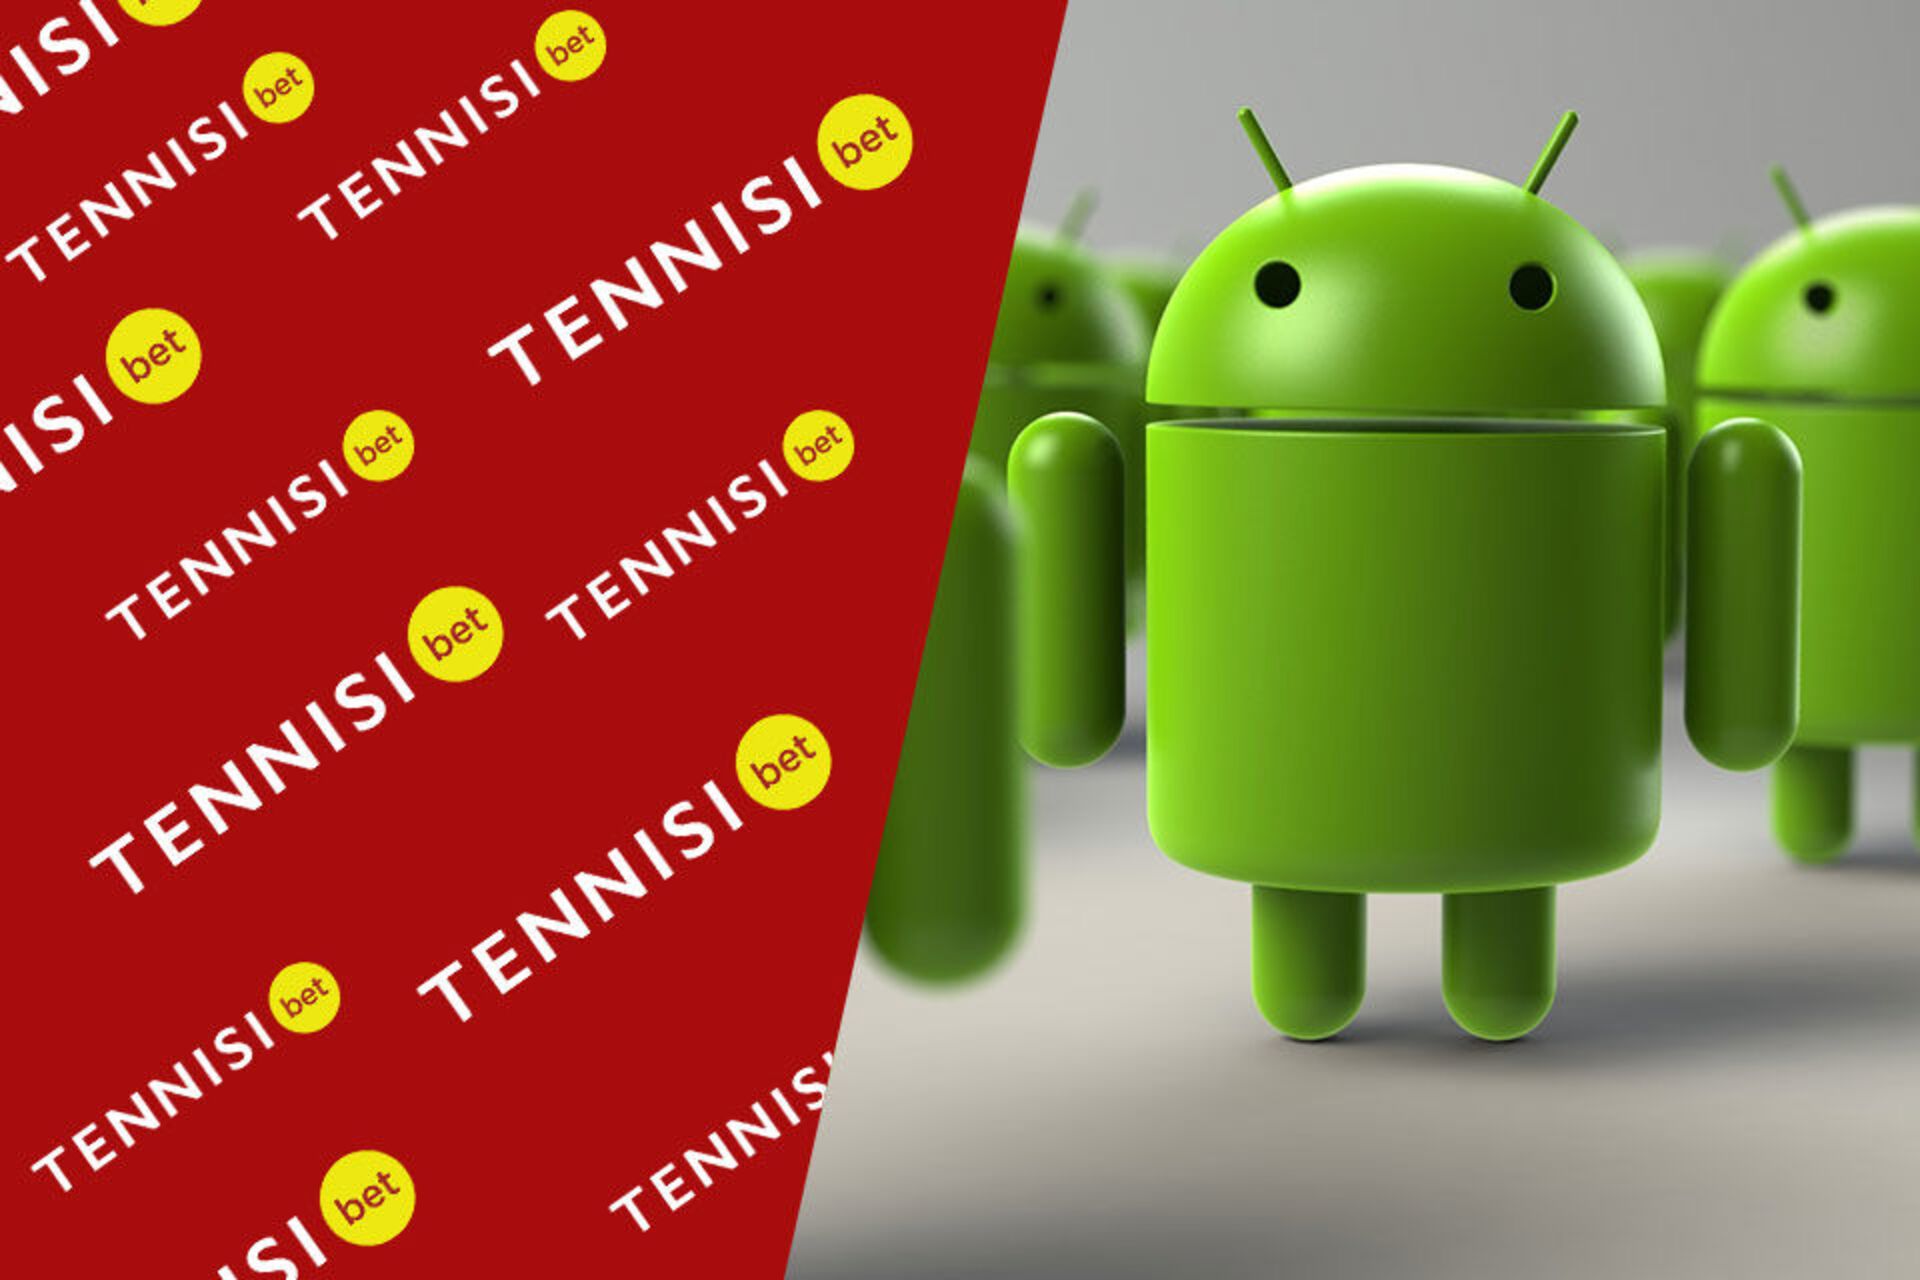 БК Тенниси обновила приложение для ОС Android